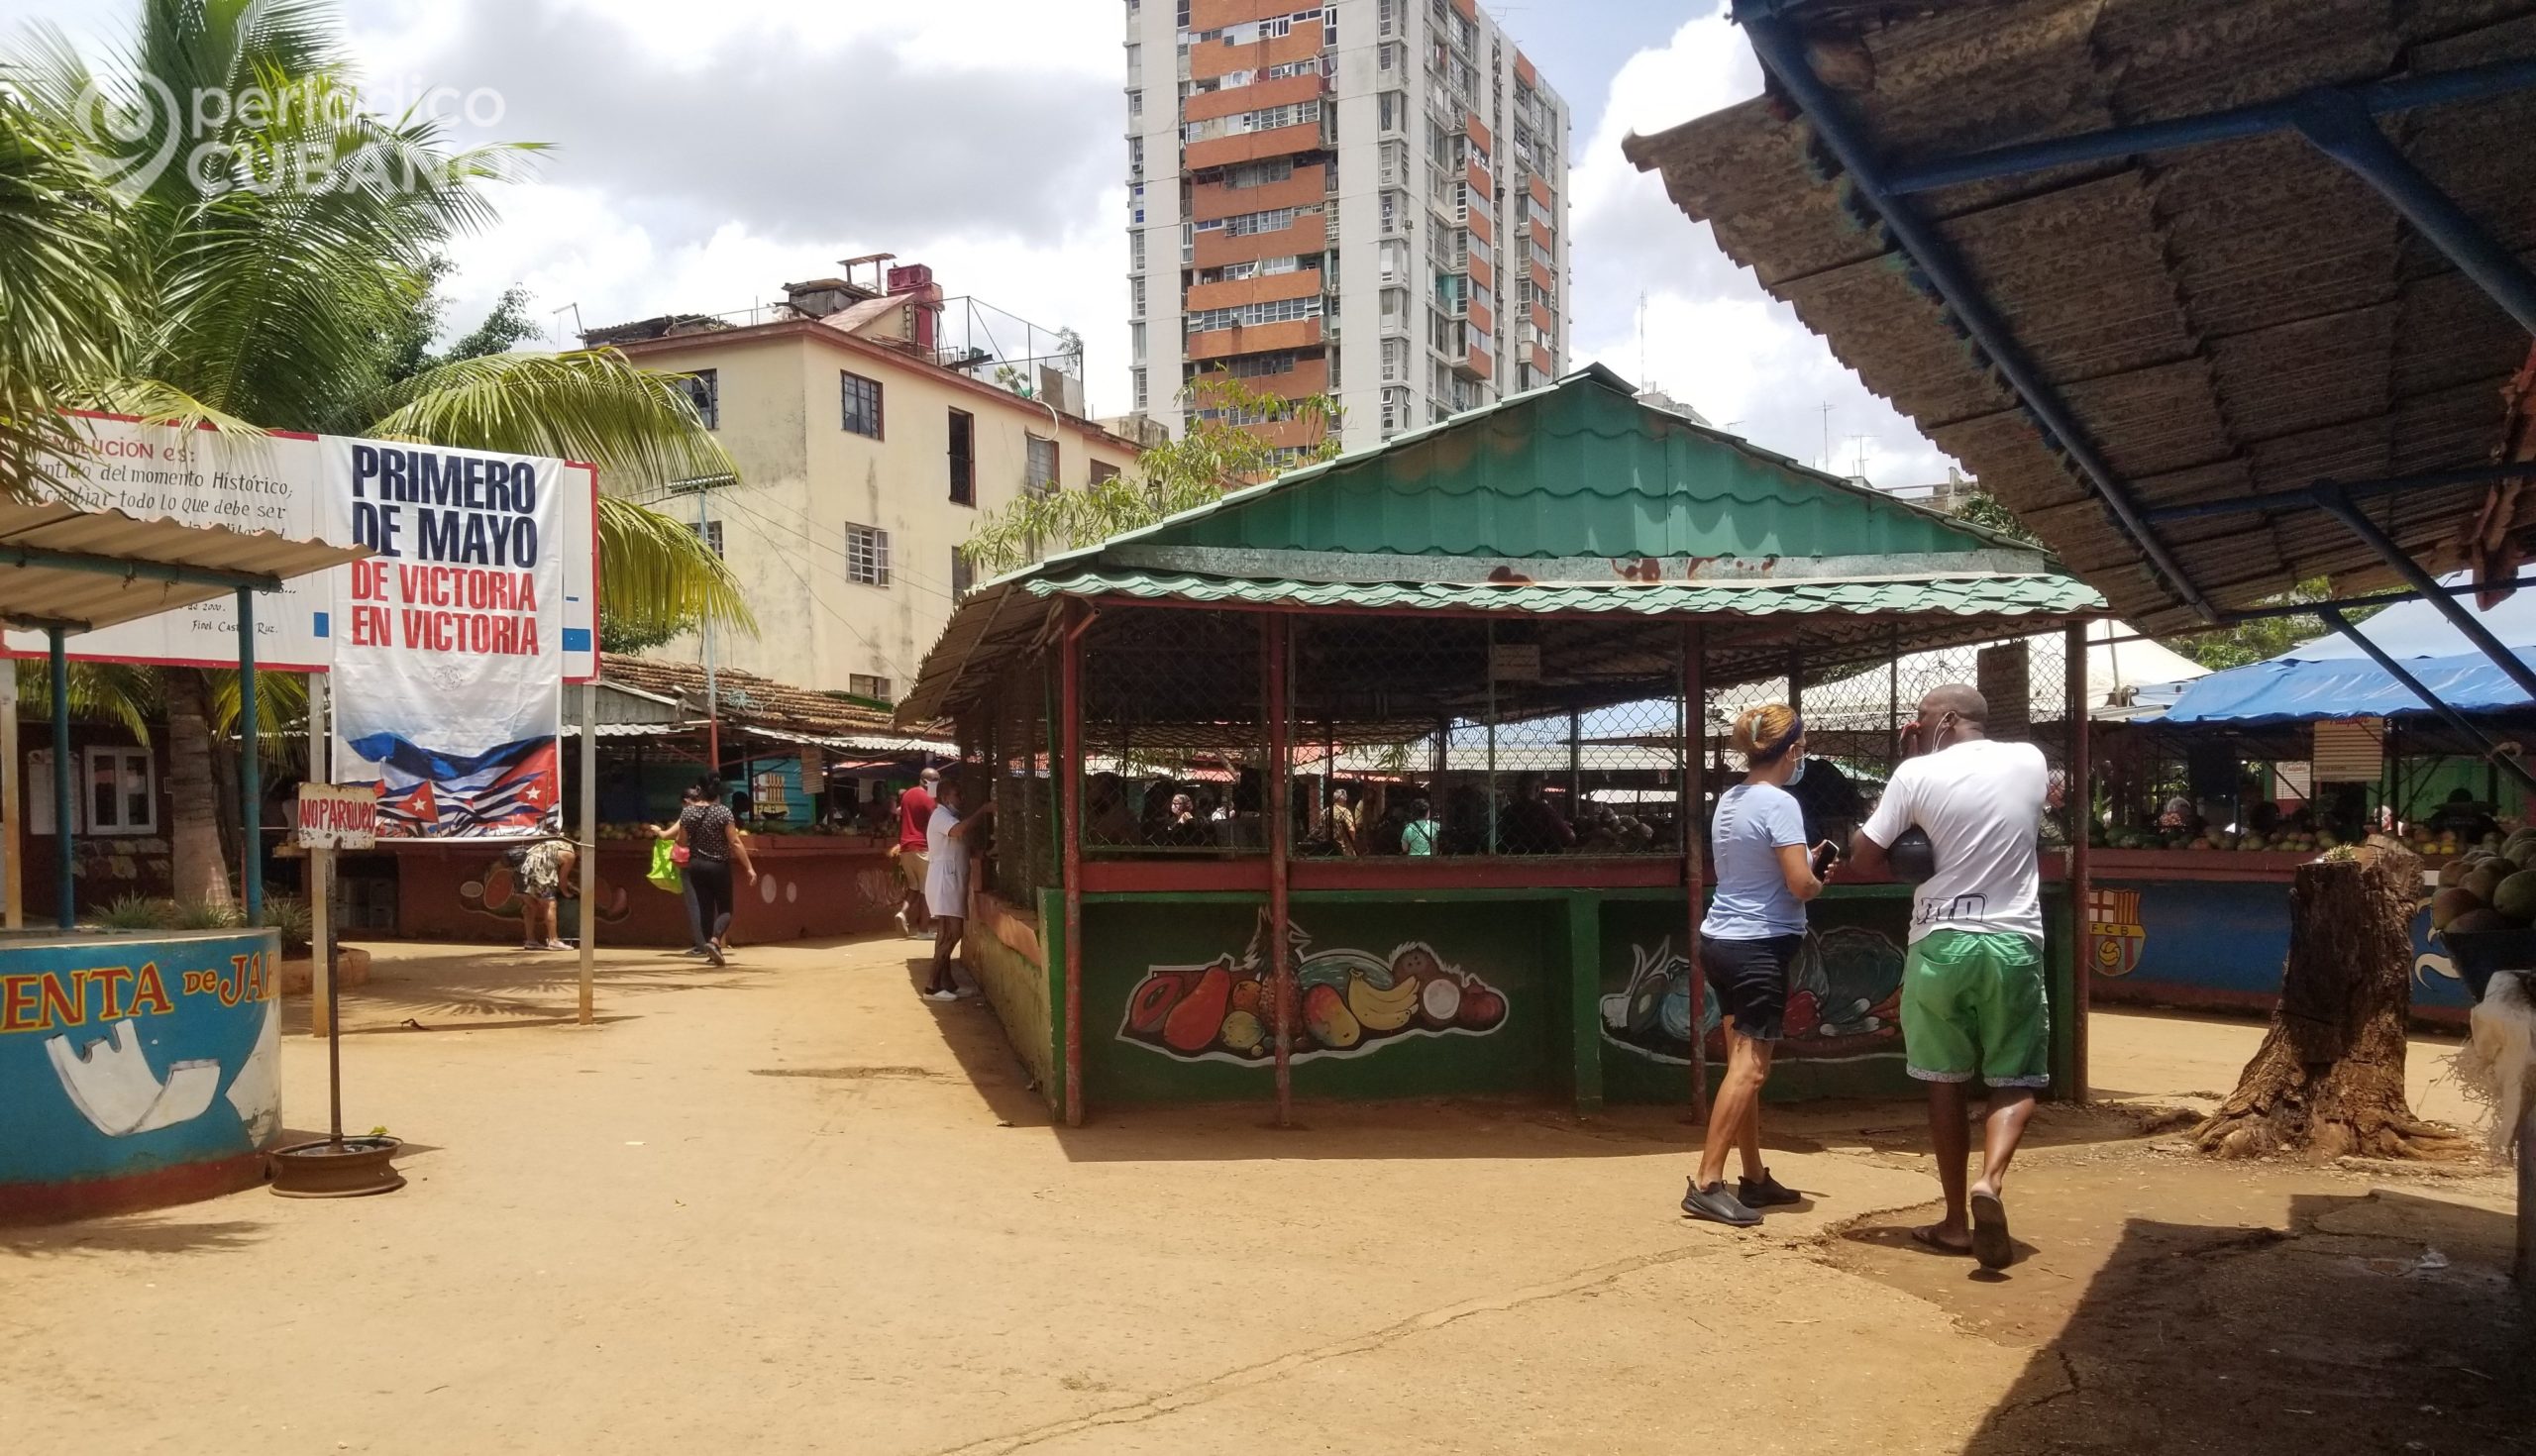 La crisis alimentaria se siente en varias localidades del territorio cubano